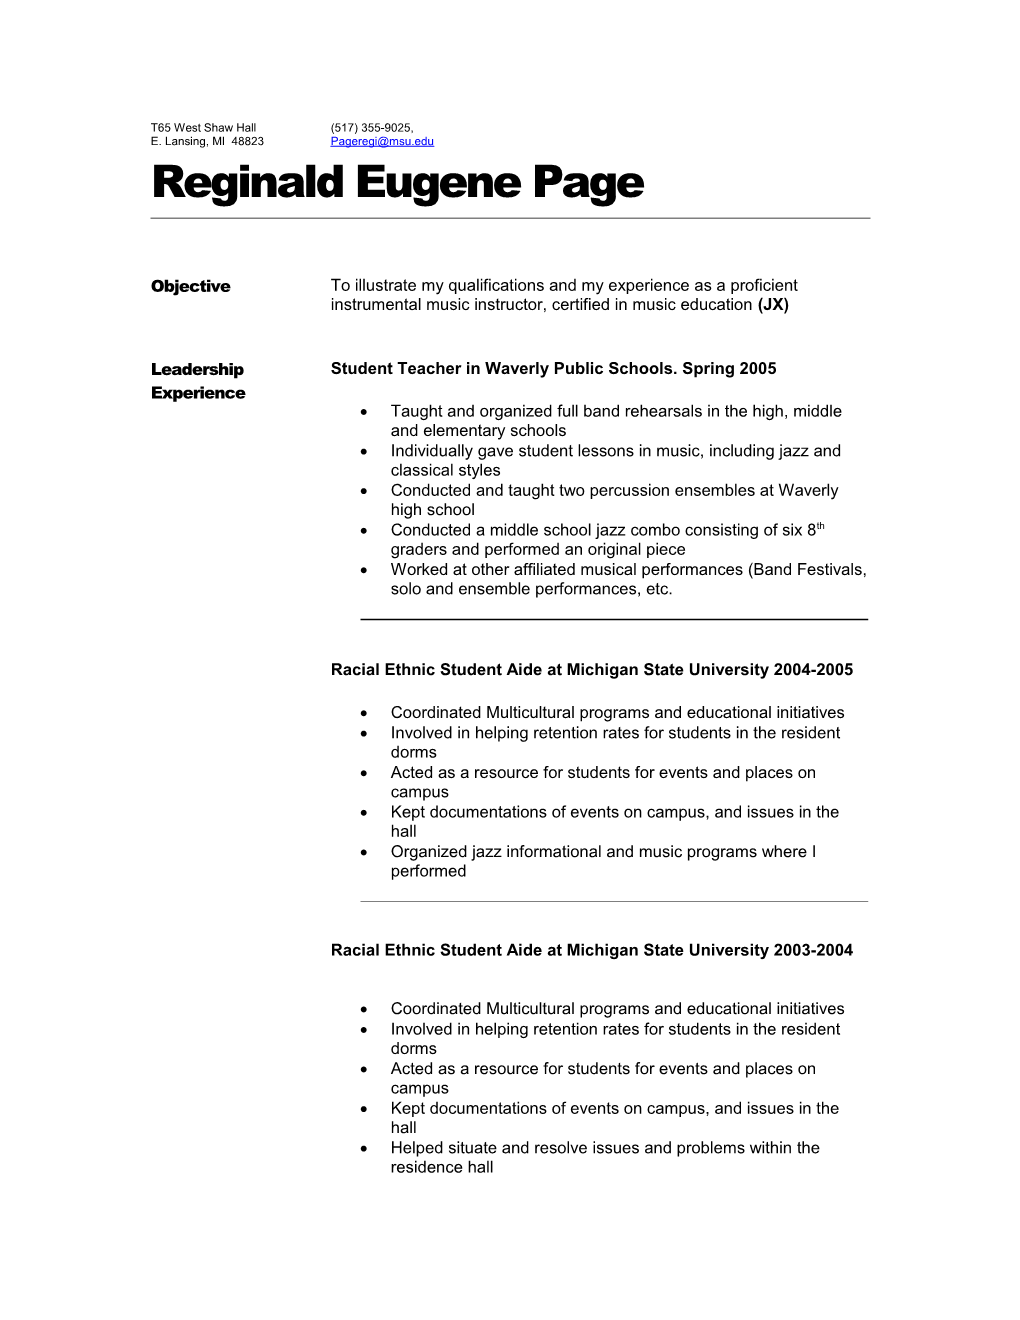 Reginald Eugene Page